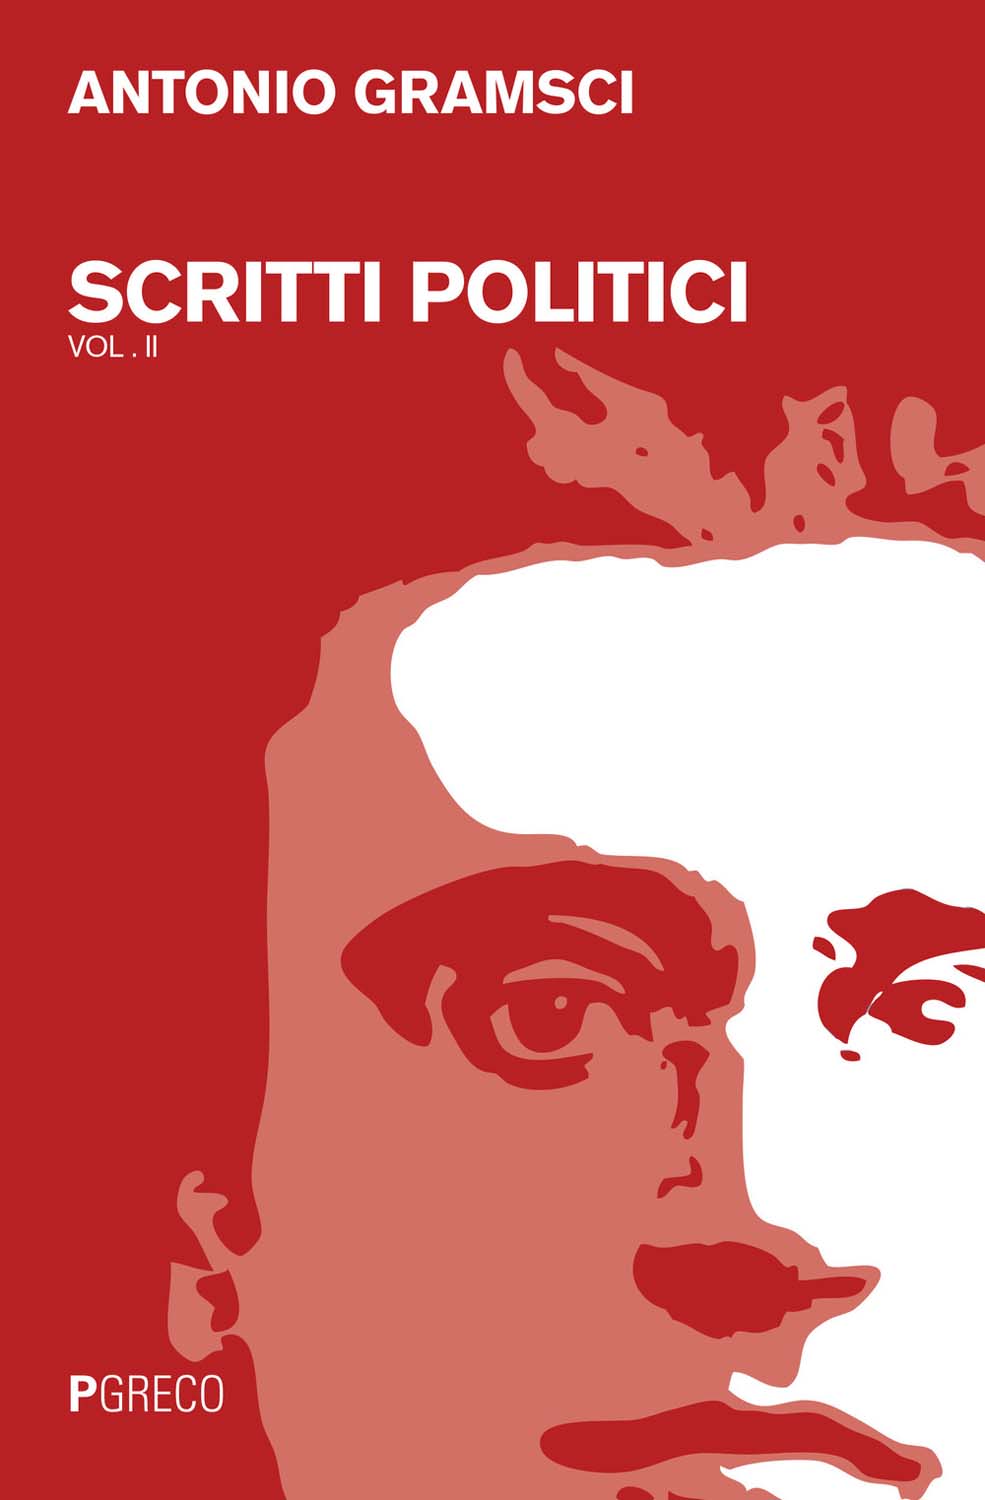 Libri Antonio Gramsci - Scritti Politici NUOVO SIGILLATO, EDIZIONE DEL 14/07/2016 SUBITO DISPONIBILE